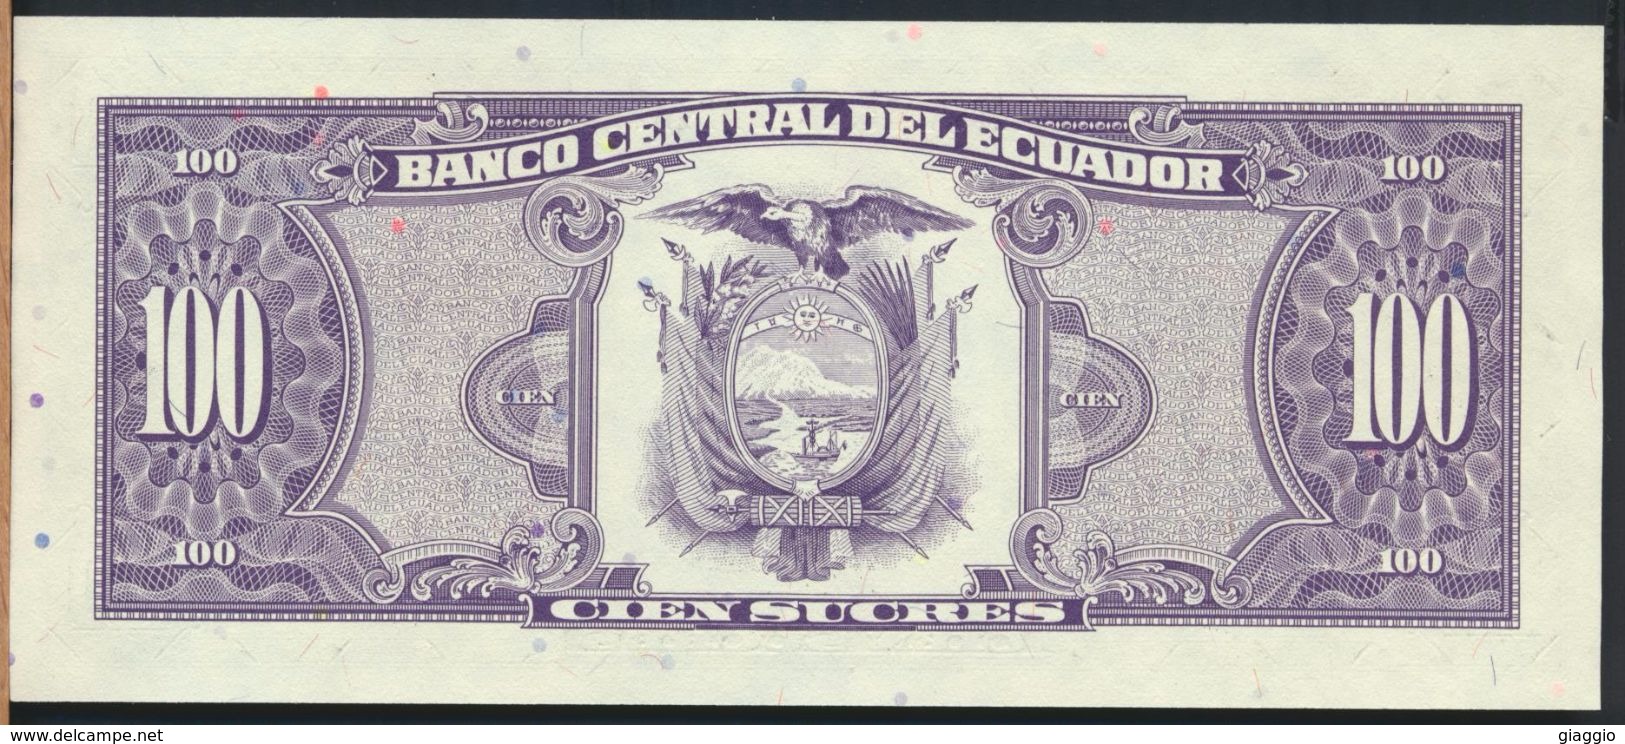 °°° ECUADOR - 100 SUCRES 1992 UNC °°° - Ecuador